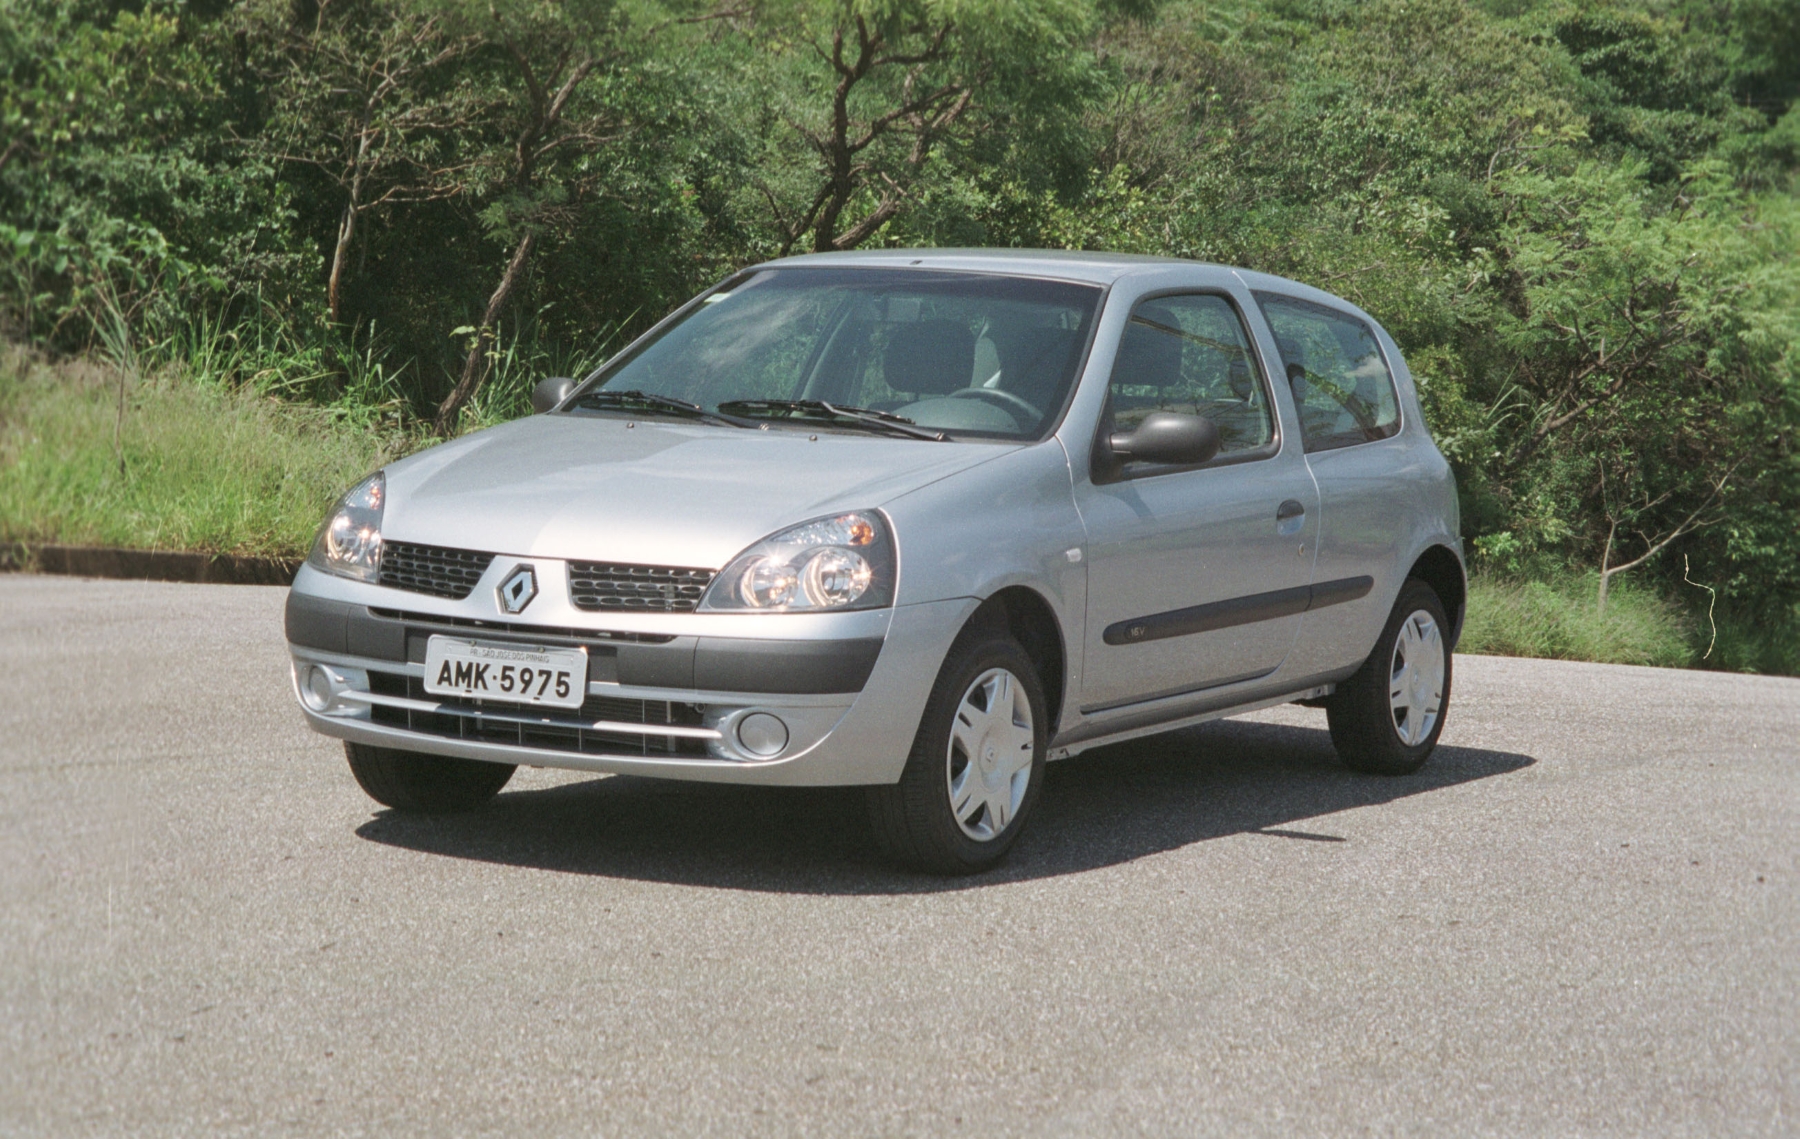 Renault Clio 1.0 16V modelo 2005